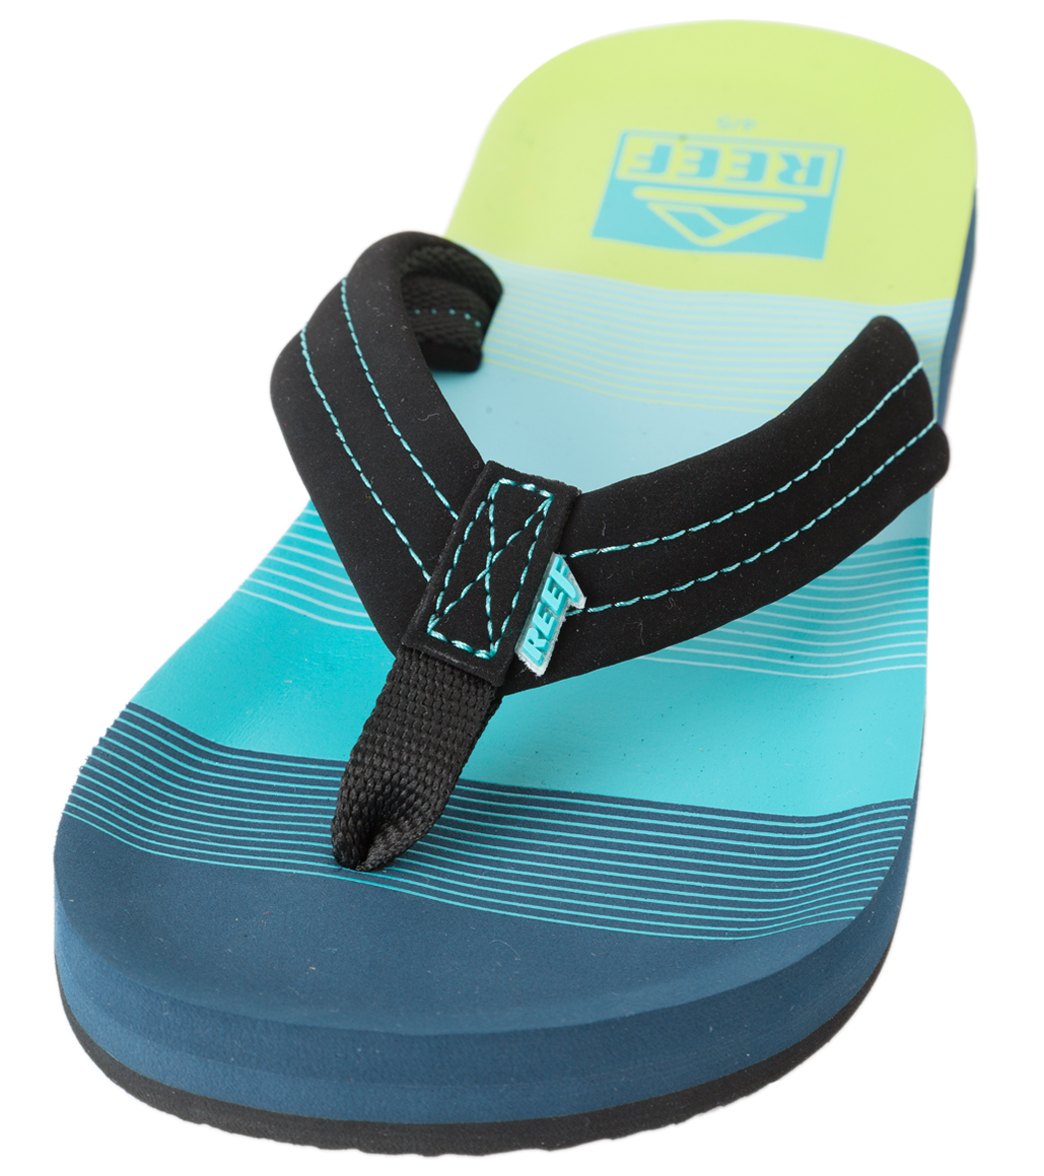 Reef Boys' Ahi Sandals - Aqua/Green 3/4 Infant/ Eva/Foam/Polyester - Swimoutlet.com